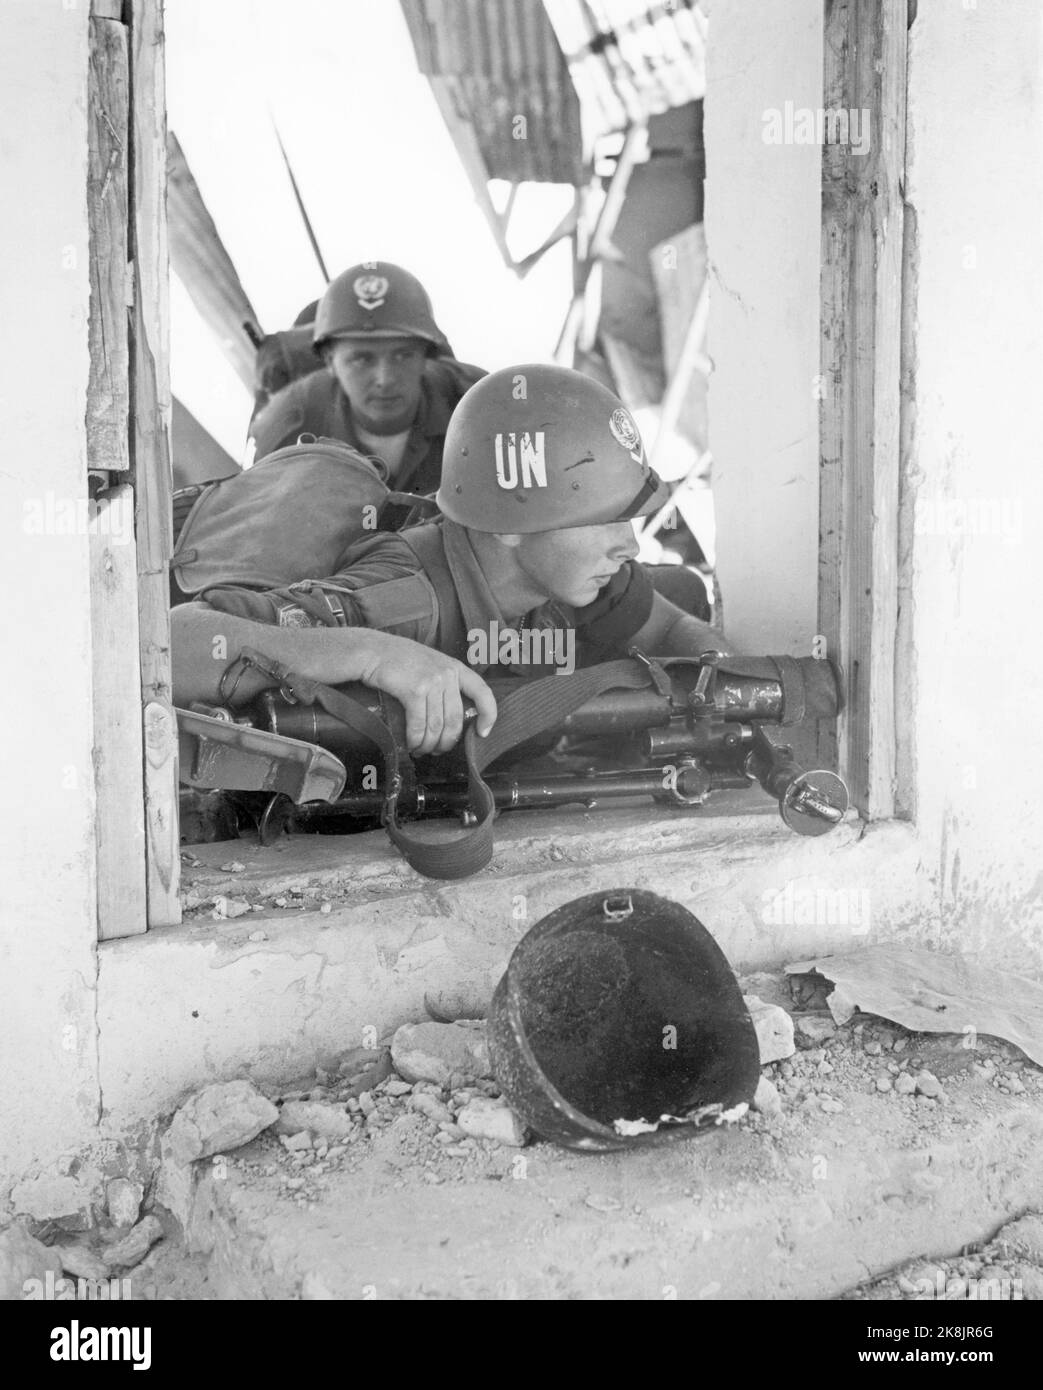 Ägypten 195702. Von 1957 bis 1967 wurden UN-Truppen auf dem Sinai eingesetzt, nachdem Israel den Sinai besetzt hatte (die Besatzung dauerte bis 1957). --- UN-Soldaten auf der Sinai-Halbinsel im Jahr 1957- un-Einsatztruppe auf der sinai-Halbinsel. Internationale UN-Truppen folgten dem israelischen Rückzug, und UN-Truppen wurden in der Sinai-Wüste eingesetzt, oft in der Nähe israelischer Stellungen. Bild: Bohrmaschine von 1. Bombenanschlägen aus KP. A. Huitfeldt. Die Ruinen sind Überreste ägyptischer Militäreinrichtungen, die die israelischen Streitkräfte vor dem Rückzug in die Stadt sprengten. Foto: Sverre A. Børretzen / Aktuell / NTB Stockfoto